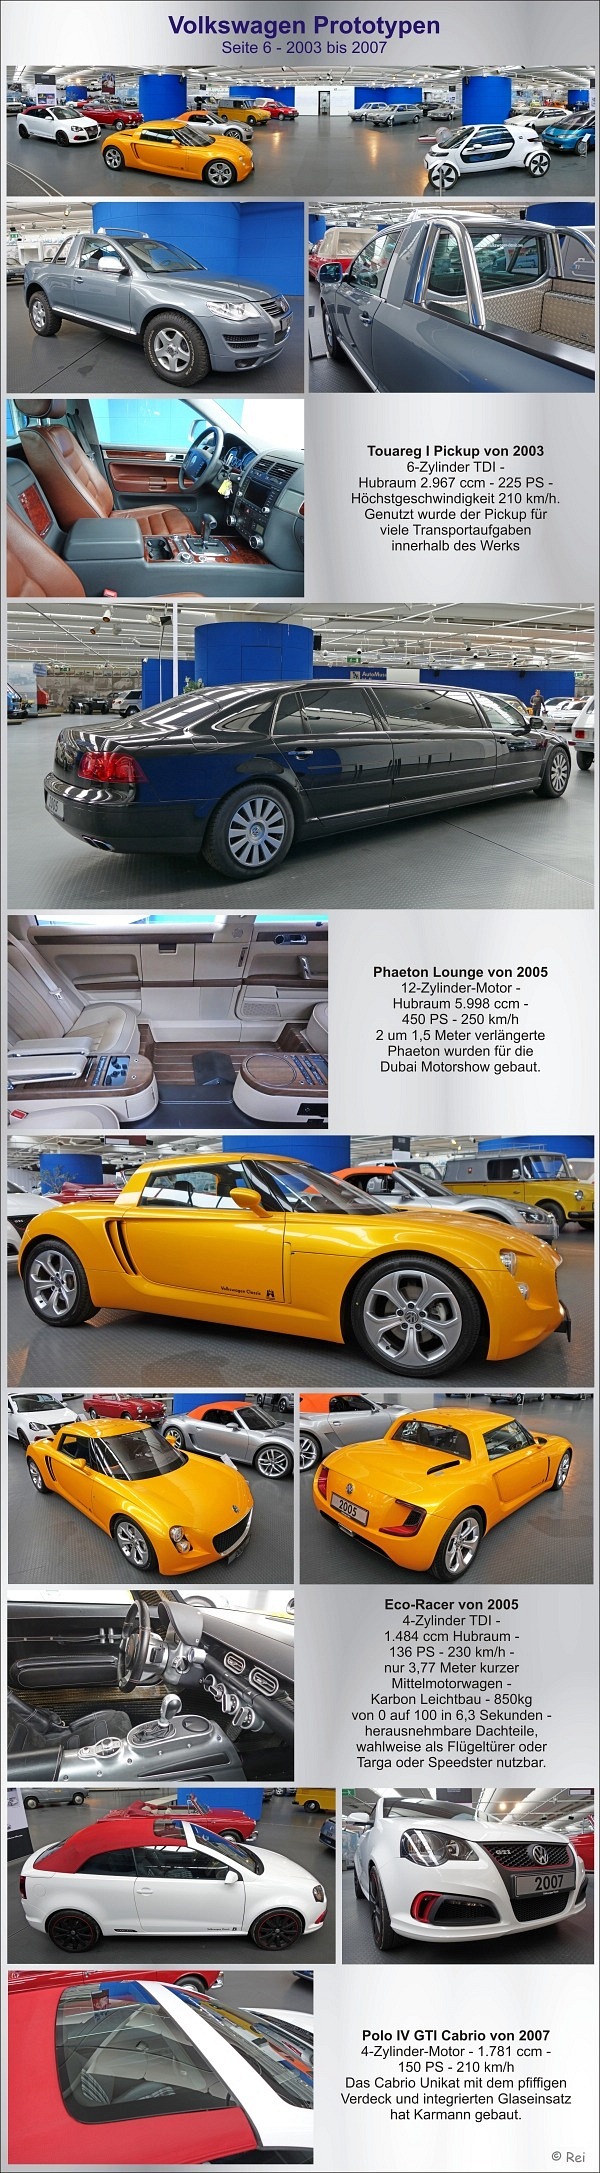 VW Prototypen - Seite 6 - 2003-2007